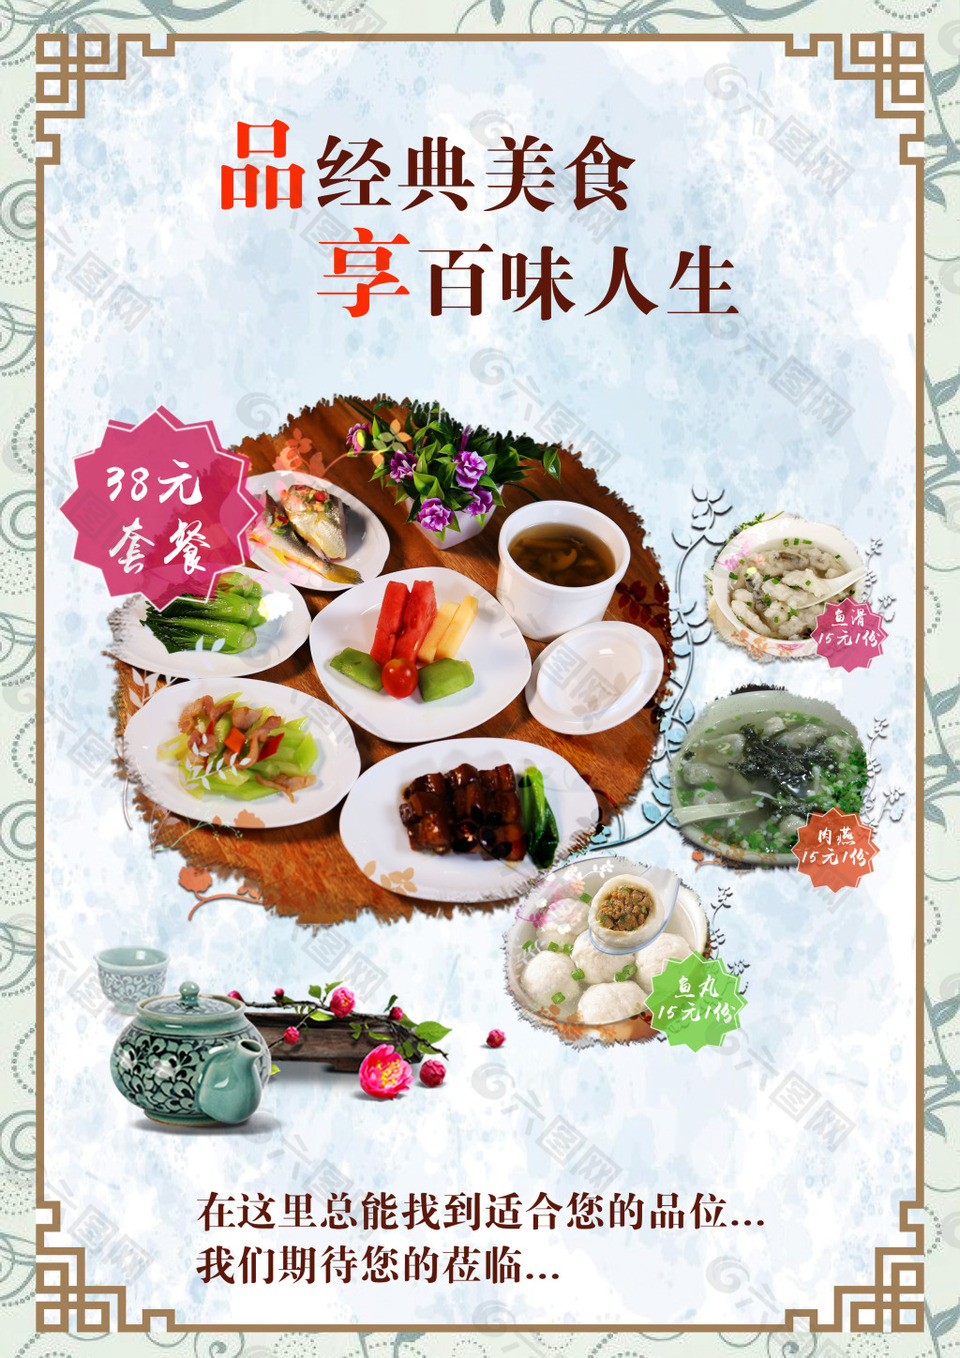 中国风菜单菜品海报平面广告素材免费下载(图片编号:8782226)